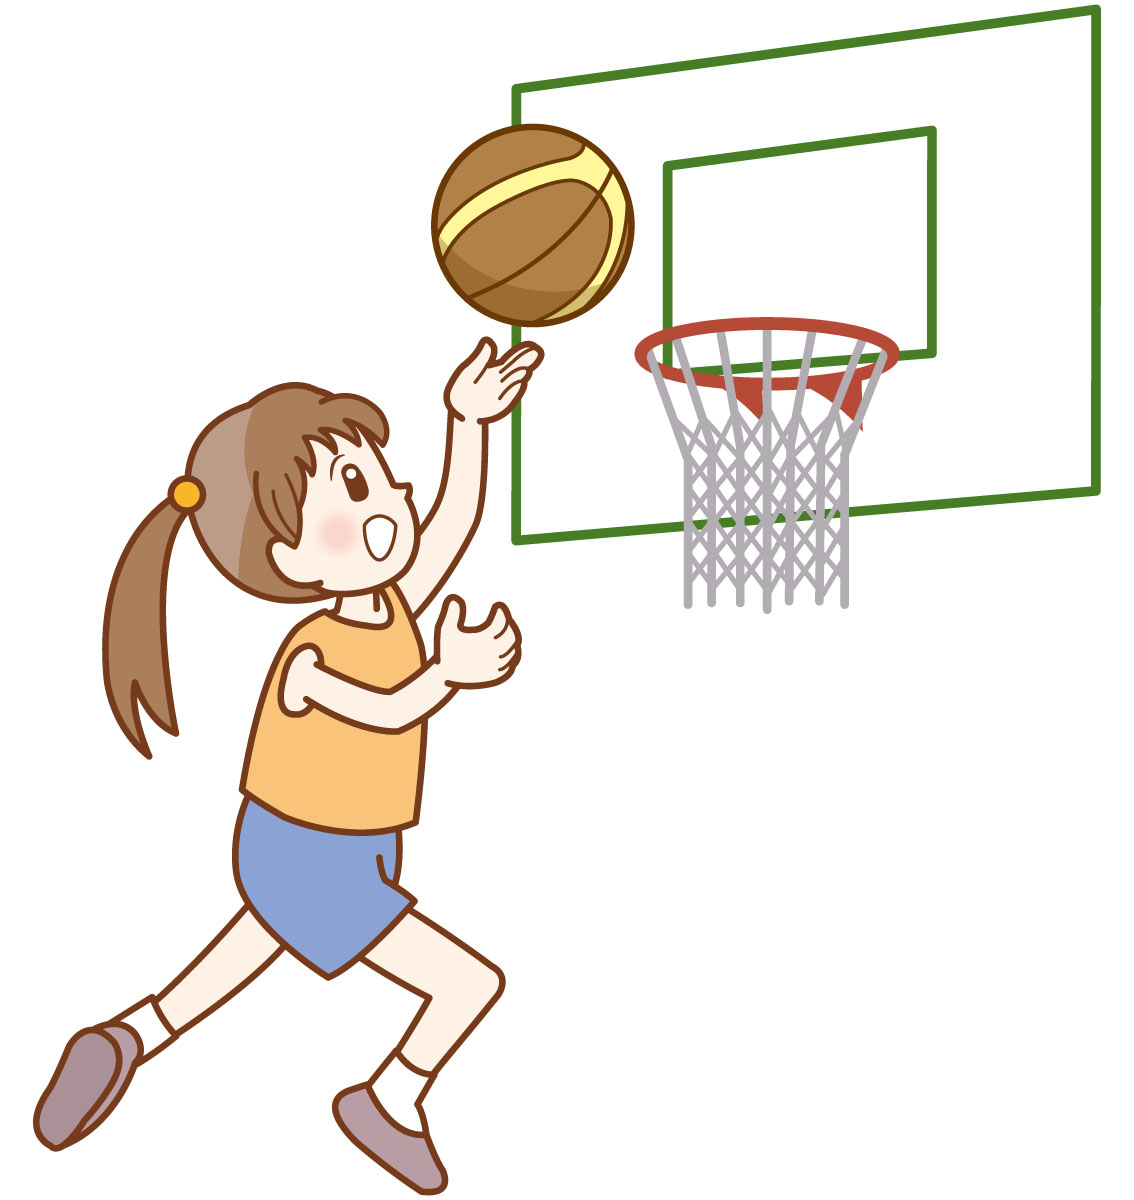 体育 運動苦手な理系でもバスケで活躍する方法 3stepでレイアップシュートをマスター 理系男子ぽっぽのブログ